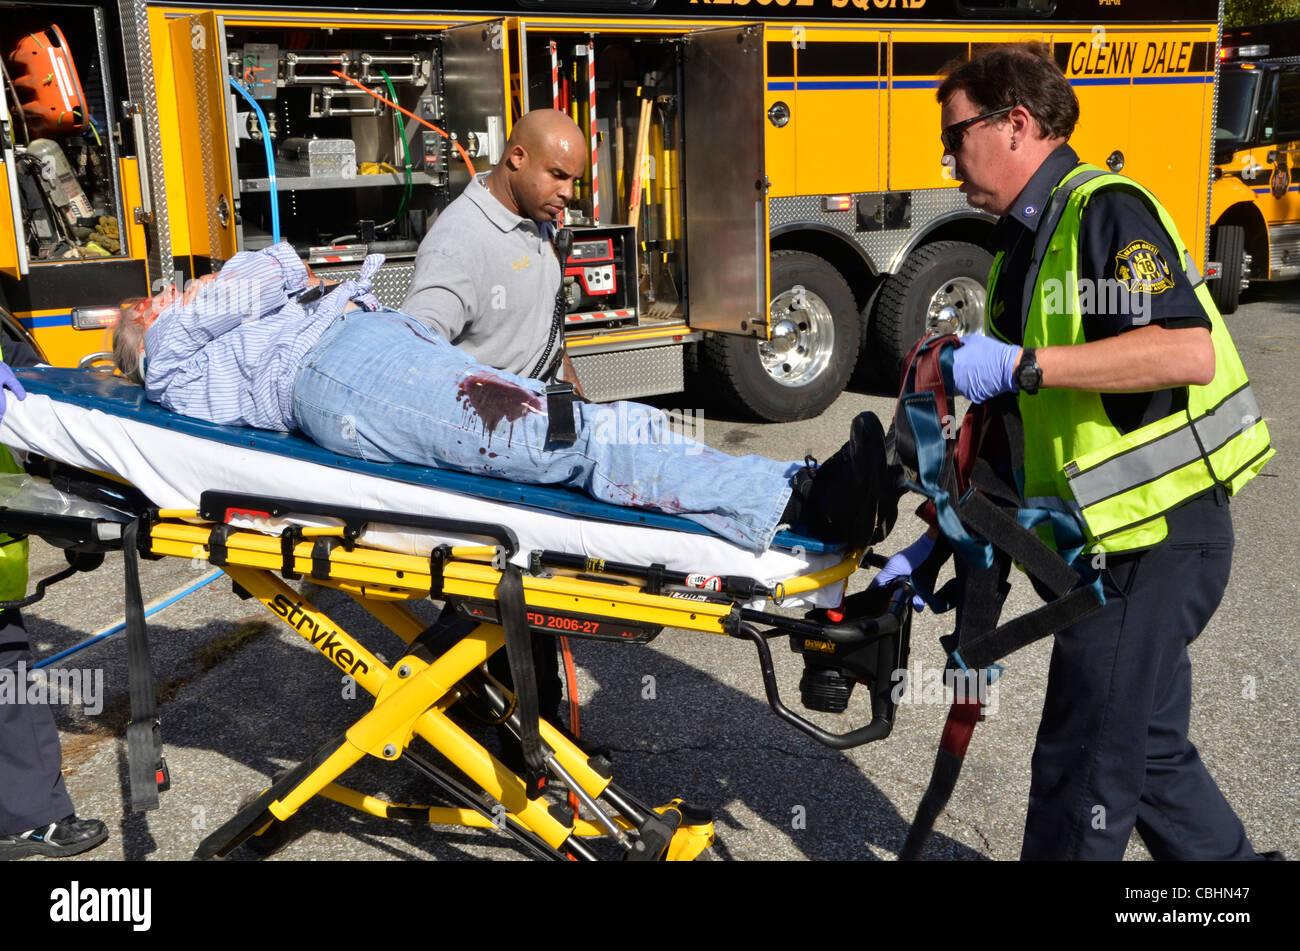 Les Sauveteurs se préparent à prendre une personne blessée à une ambulance en attente à Glendale, Arizona Banque D'Images